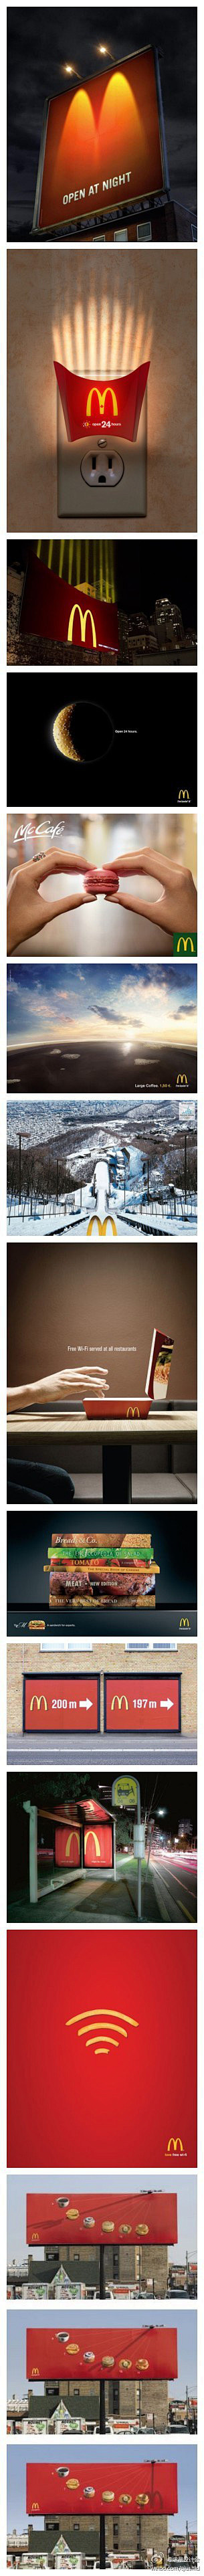 #求是爱设计#麦当劳广告选 - DUDU...